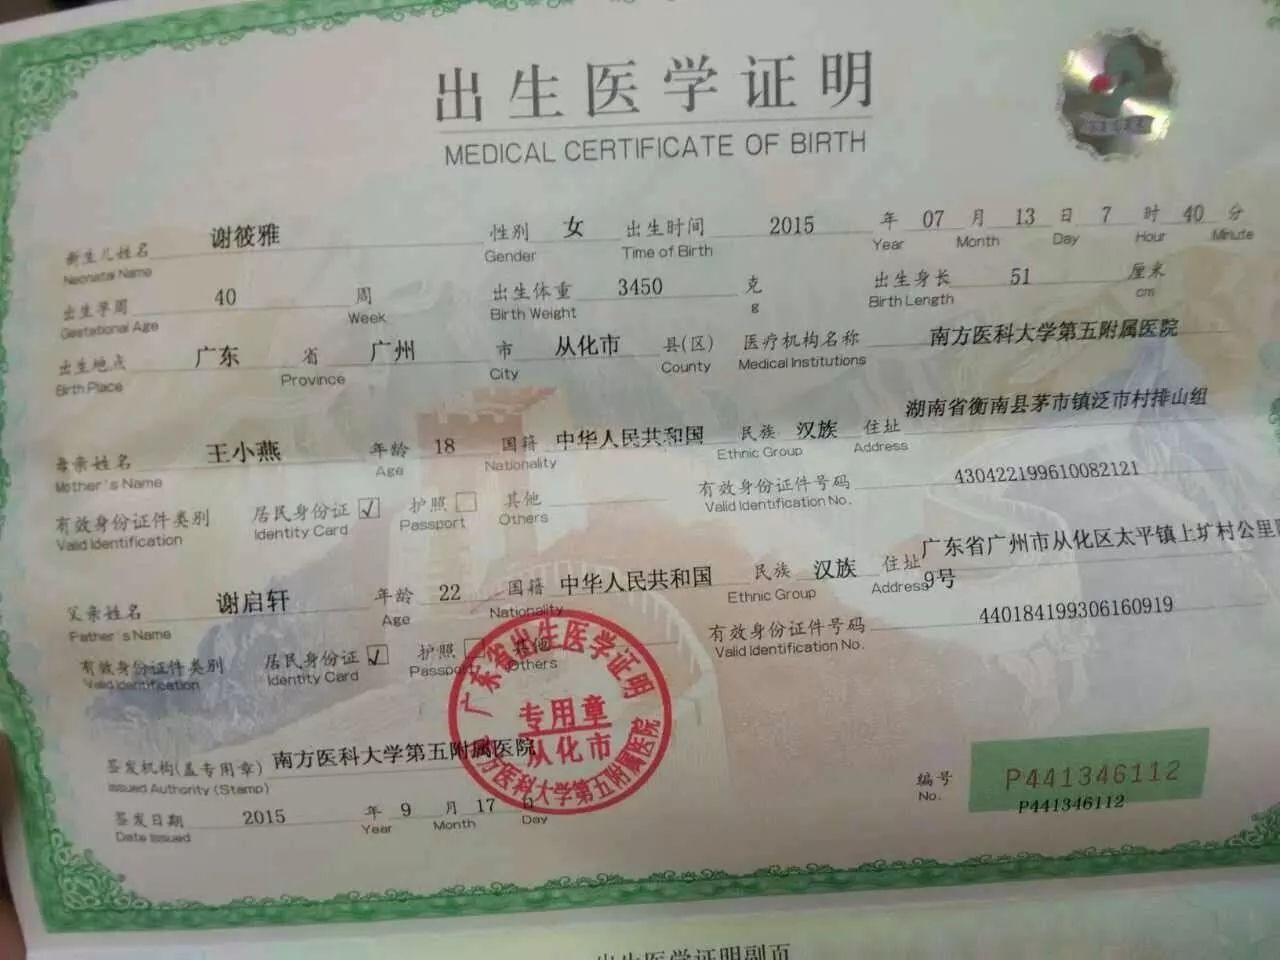 身份证,社保卡,银行卡丢了怎么办?上海最全补办流程在此!